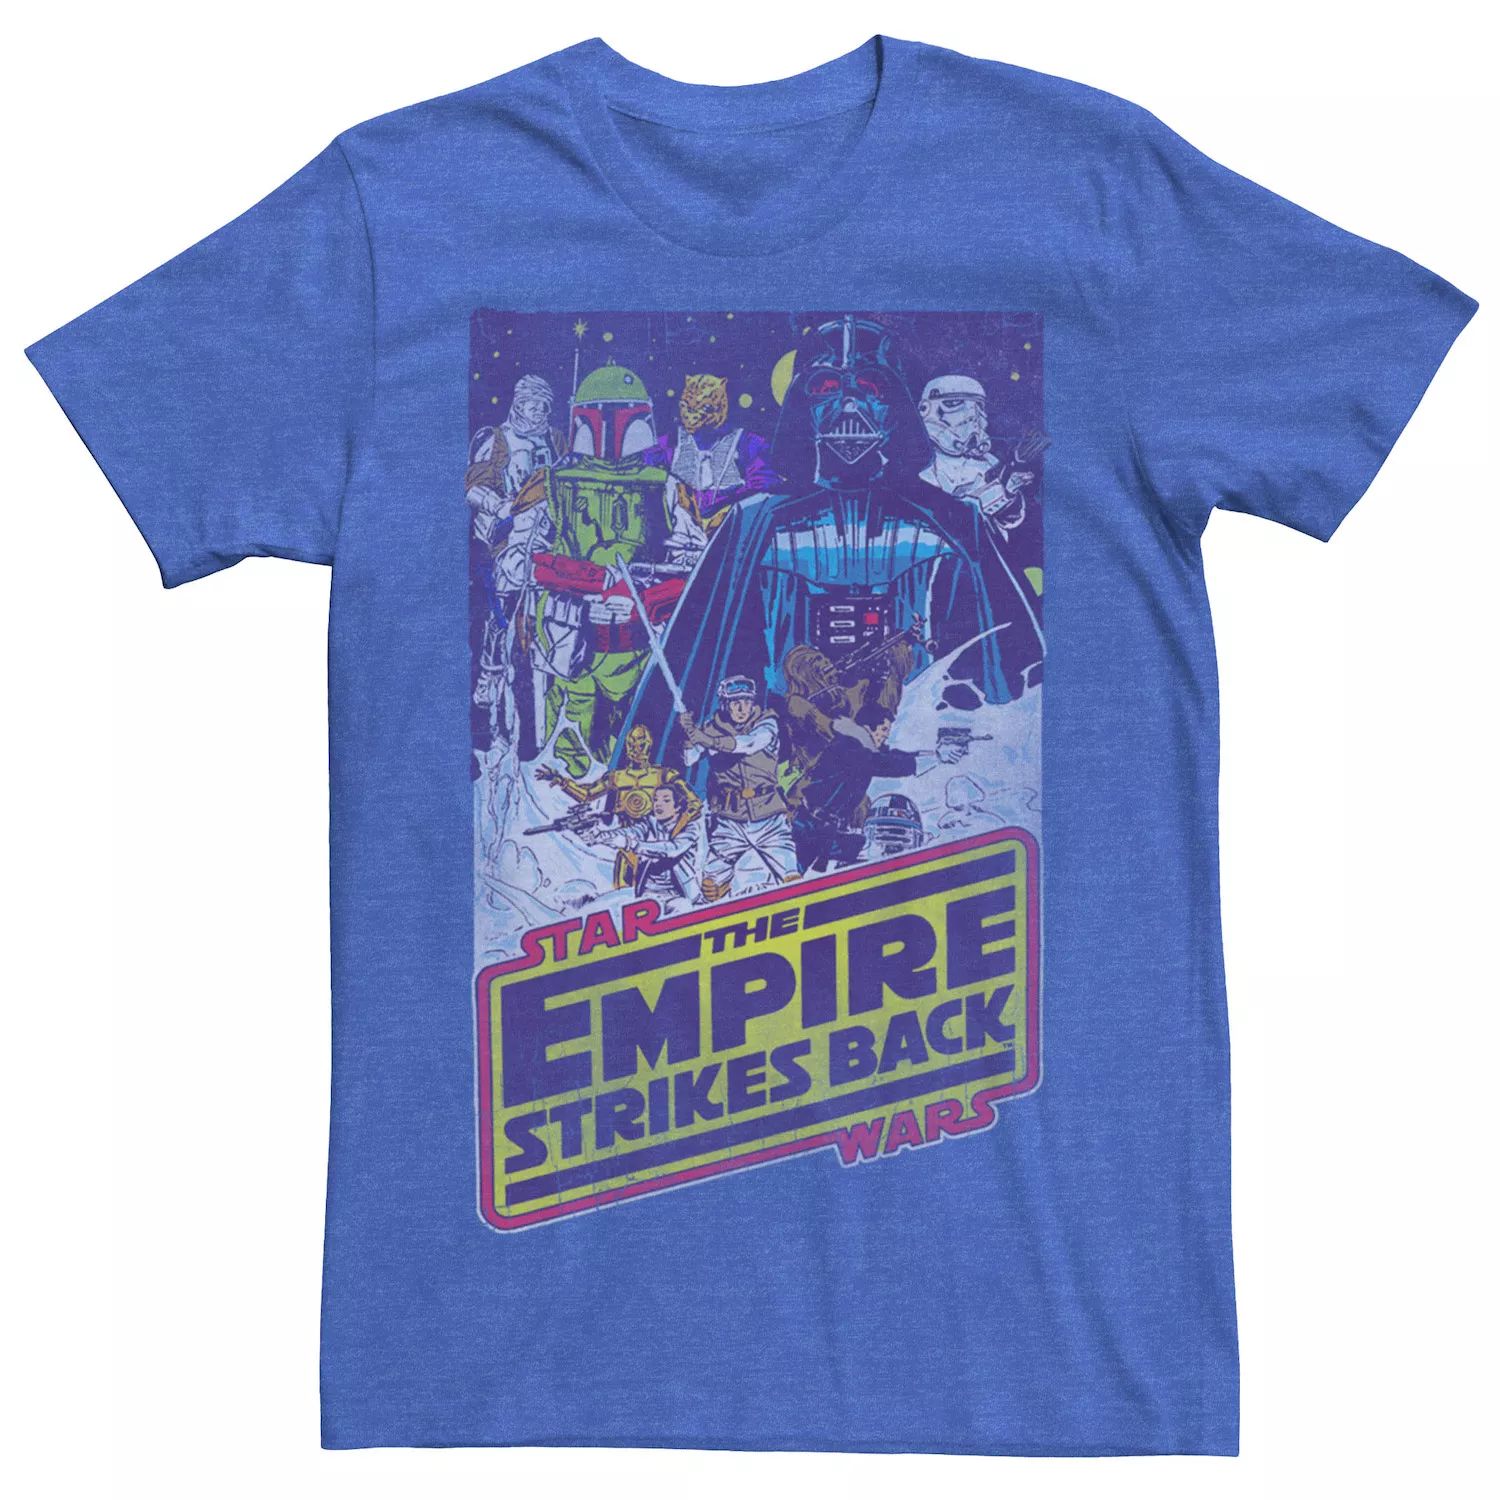 Мужская футболка с плакатом «Империя наносит ответный удар злодею» Star Wars мужская футболка с плакатом империя звездных войн наносит ответный удар fade in star wars